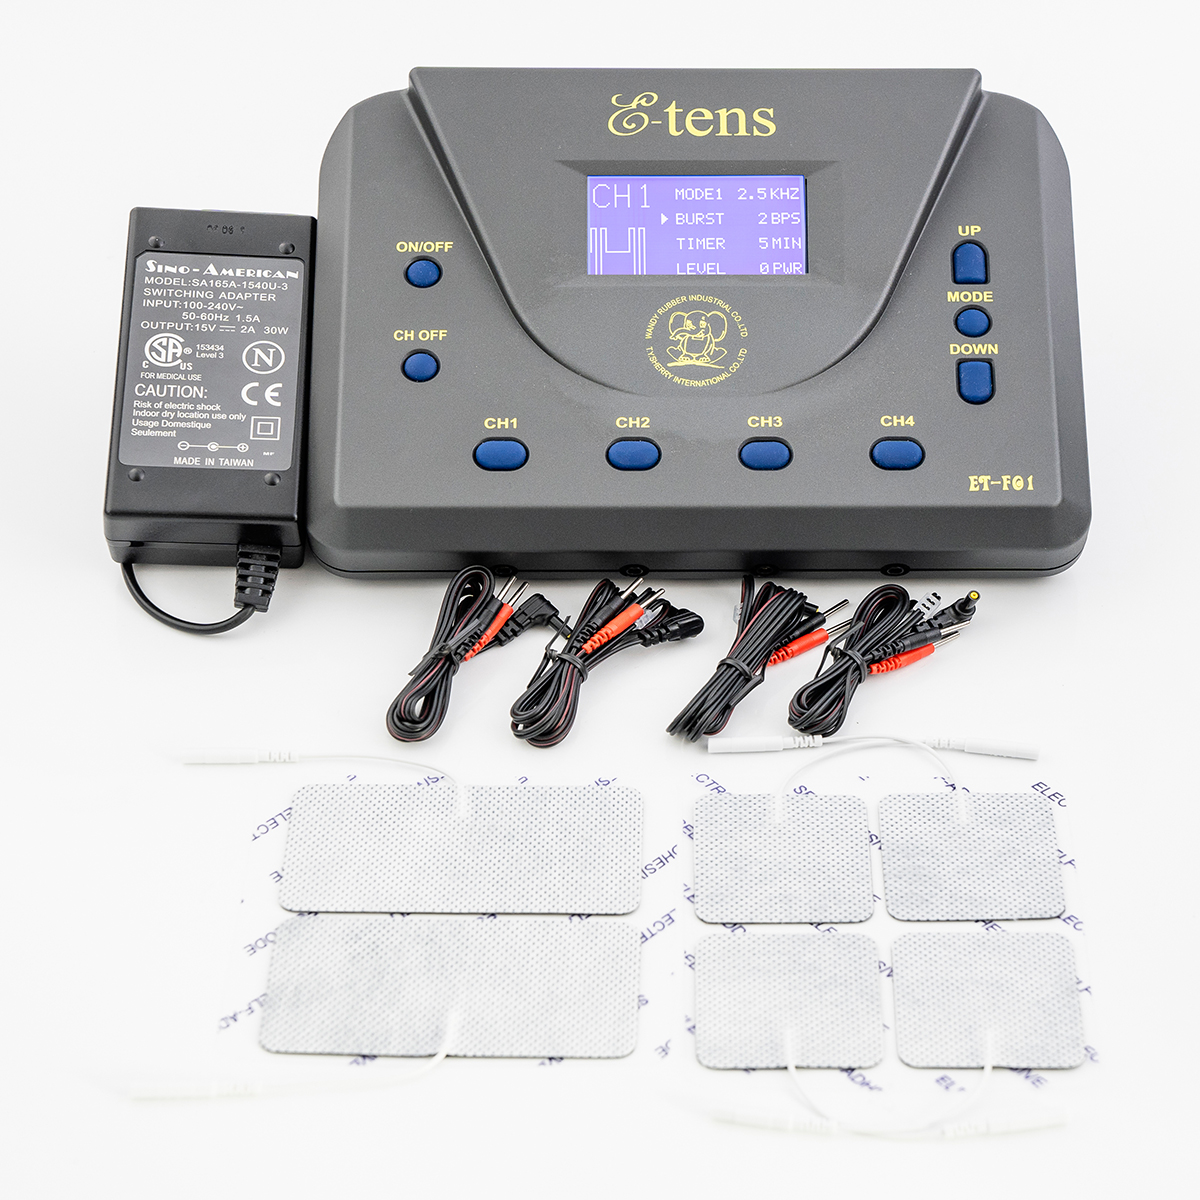 中頻調製電療機 E-tens